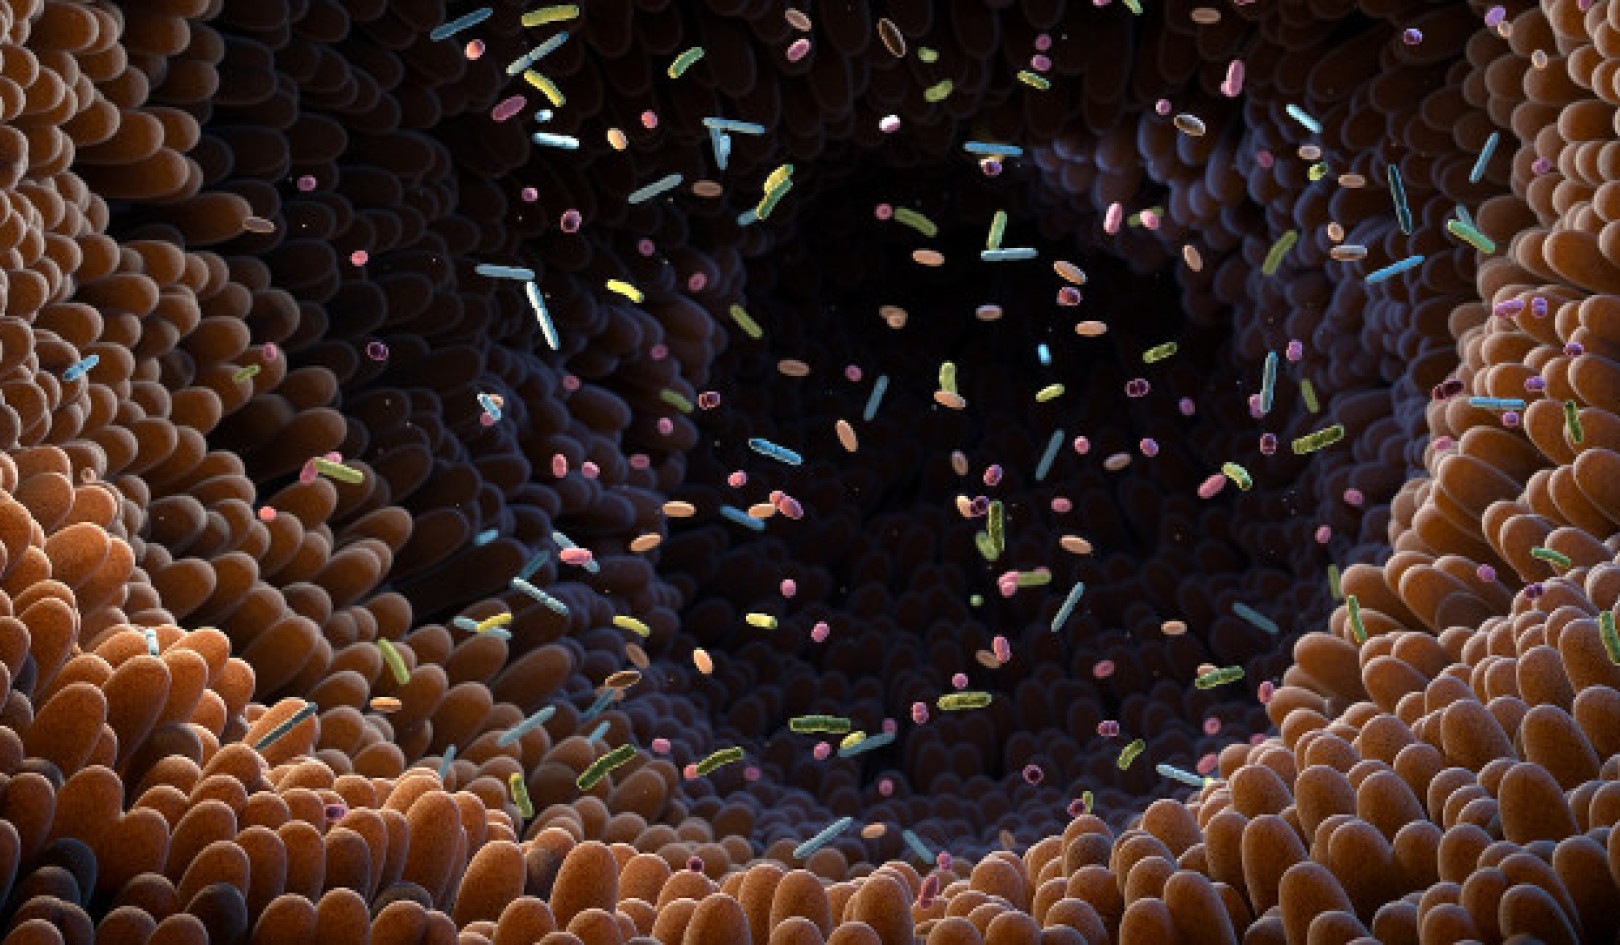 פתיחת הפוטנציאל של מיקרוביום מעיים: השלכות על בריאות וטיפול